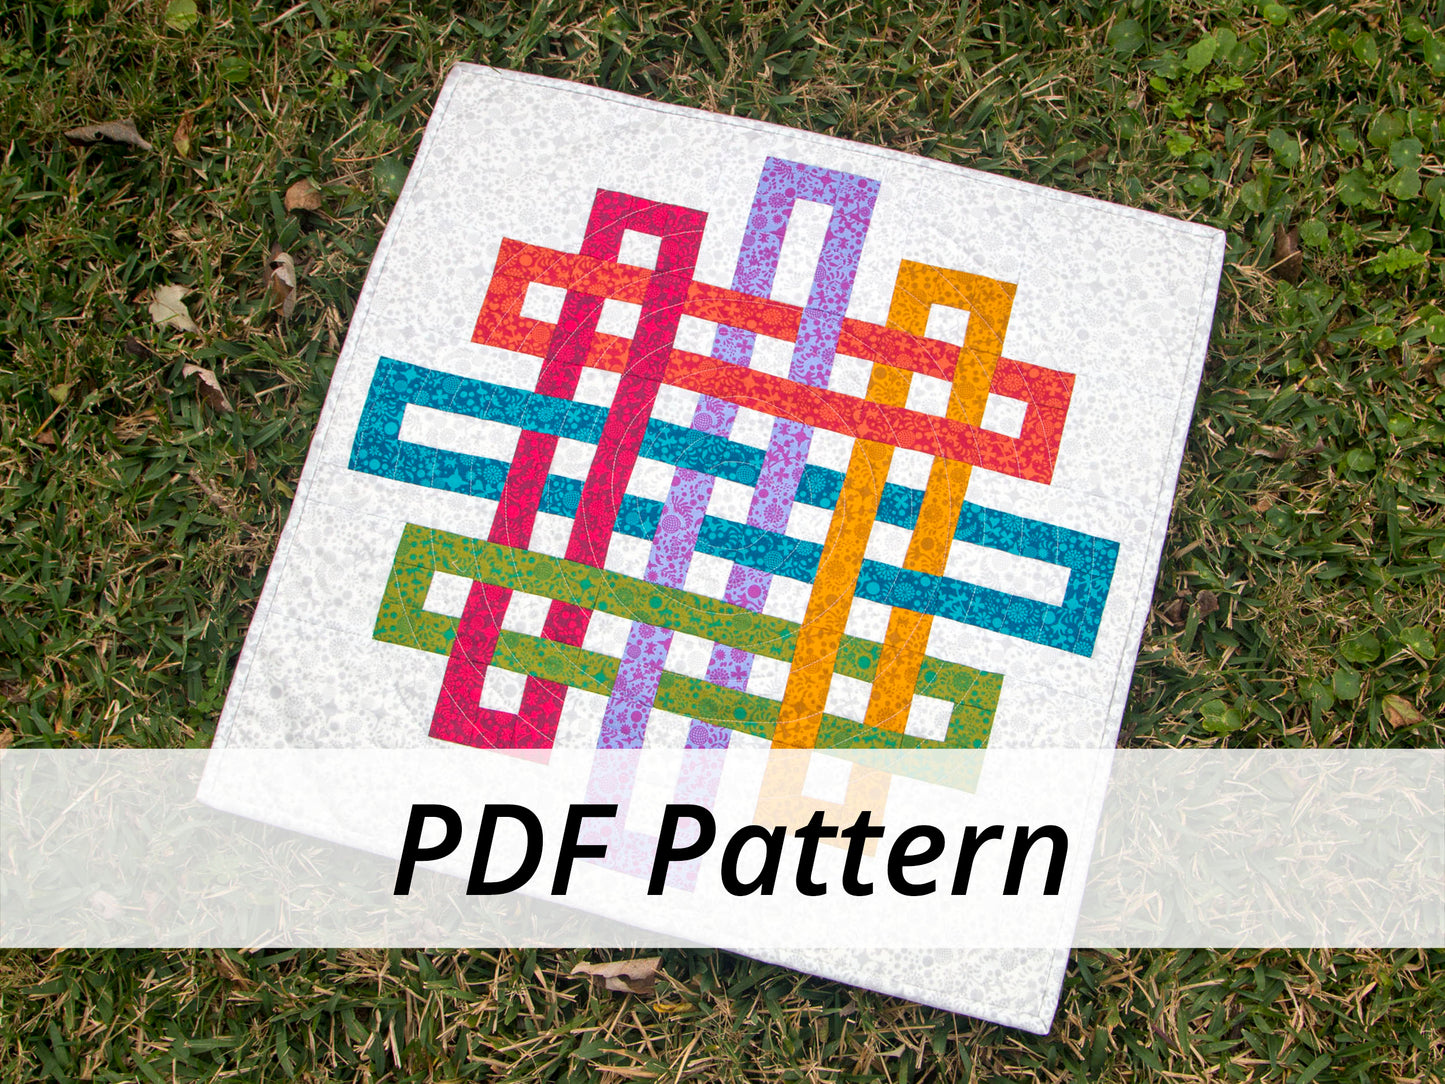 Intertwined PDF Pattern